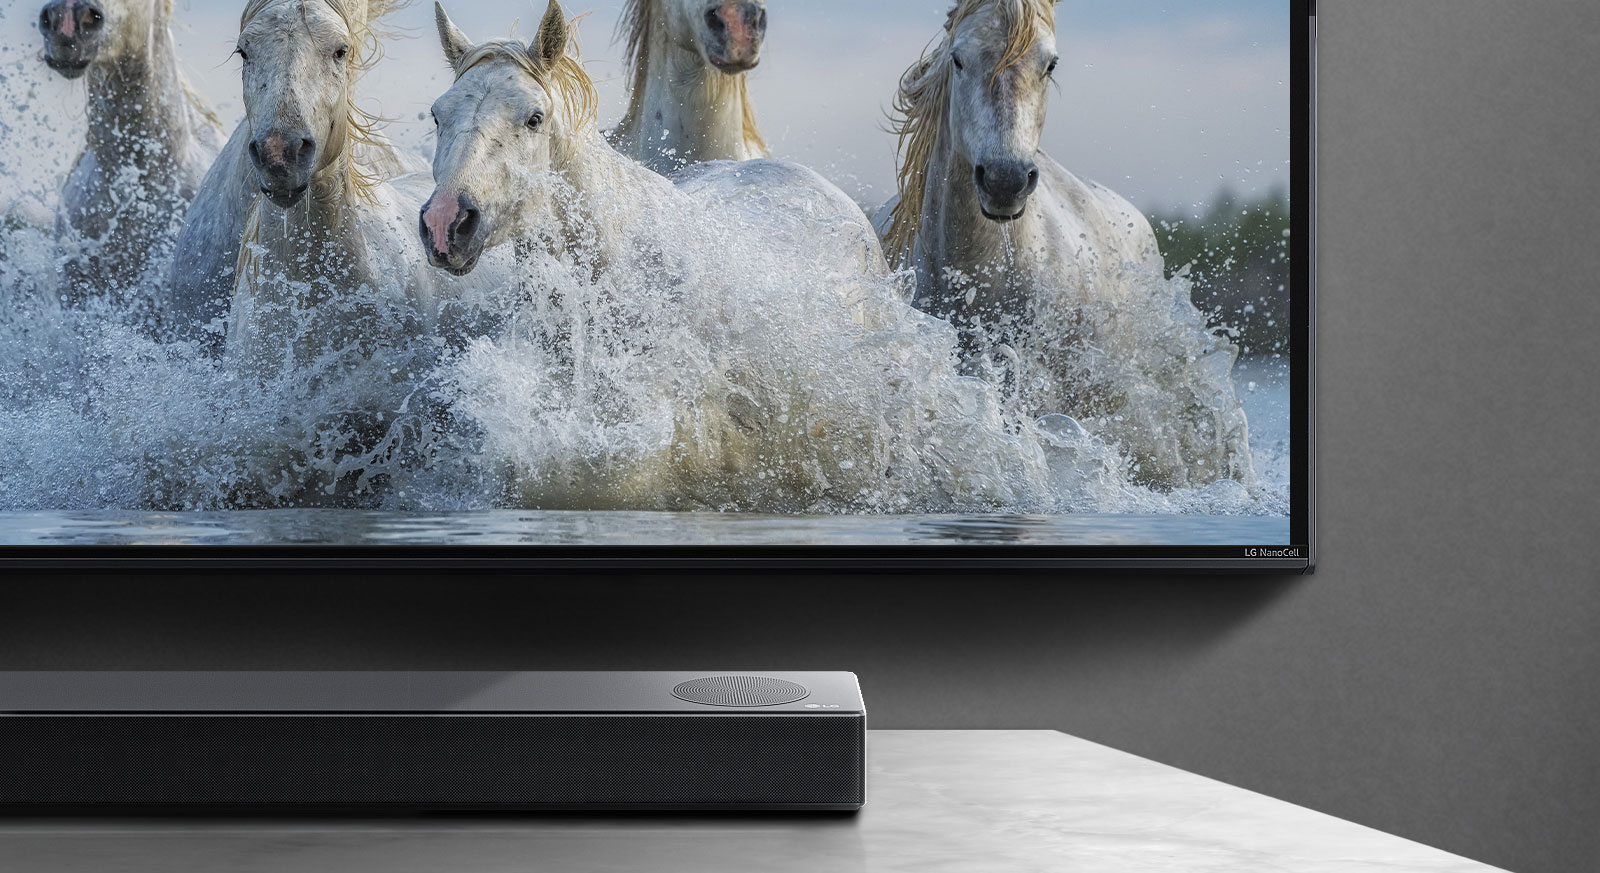 Το μισό του κάτω μέρους της οθόνης και το μισό του sound bar. Η τηλεόραση προβάλλει λευκά άλογα που τρέχουν πάνω από το νερό.